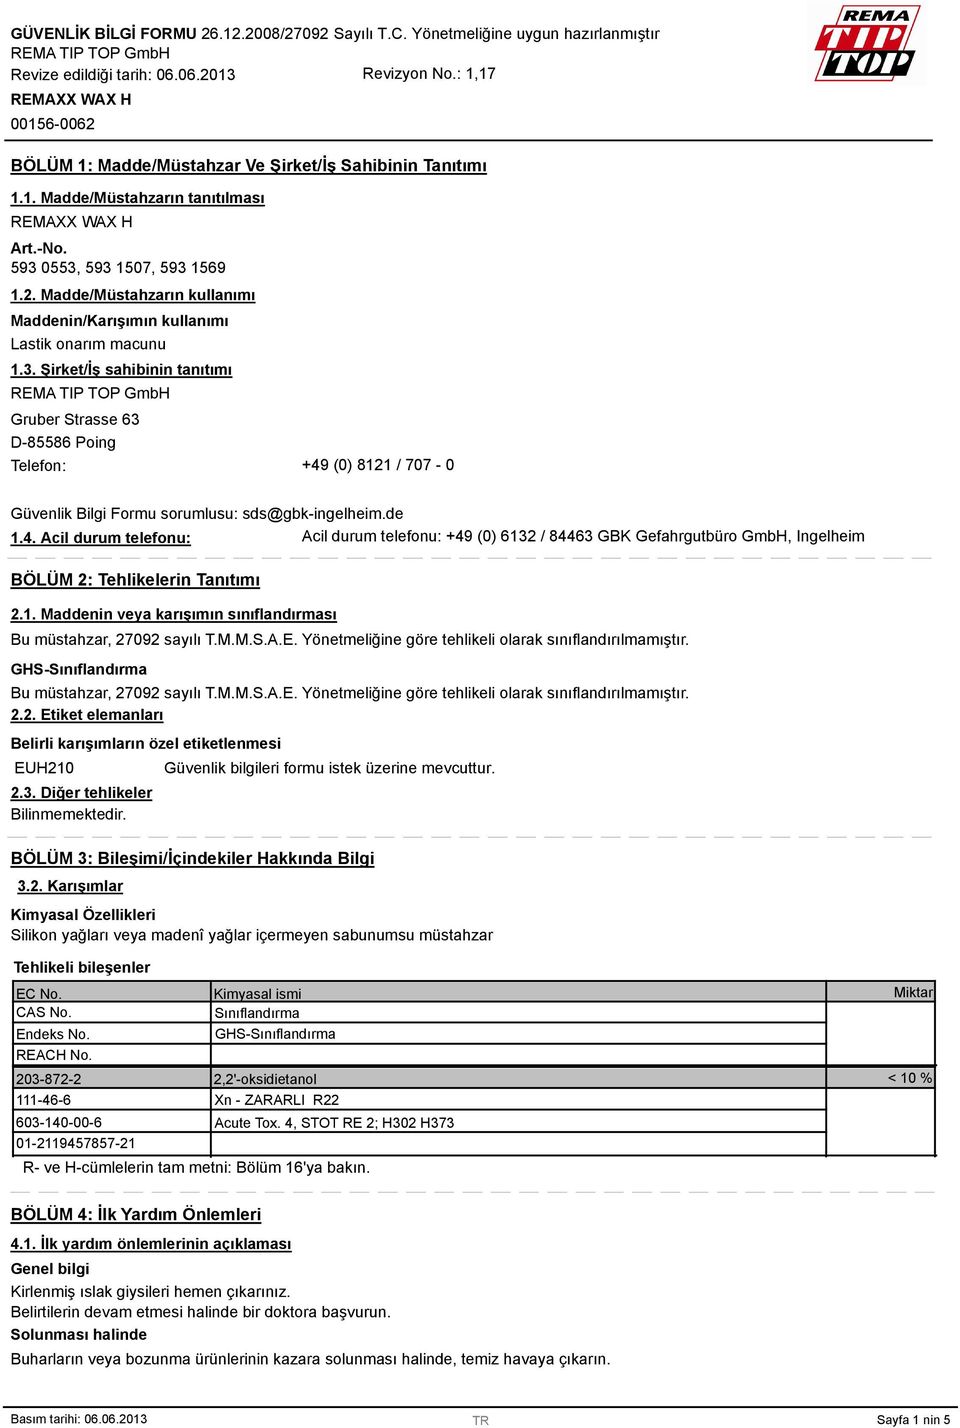 Şirket/İş sahibinin tanıtımı Gruber Strasse 63 D-85586 Poing Telefon: +49 (0) 8121 / 707-0 Güvenlik Bilgi Formu sorumlusu: sds@gbk-ingelheim.